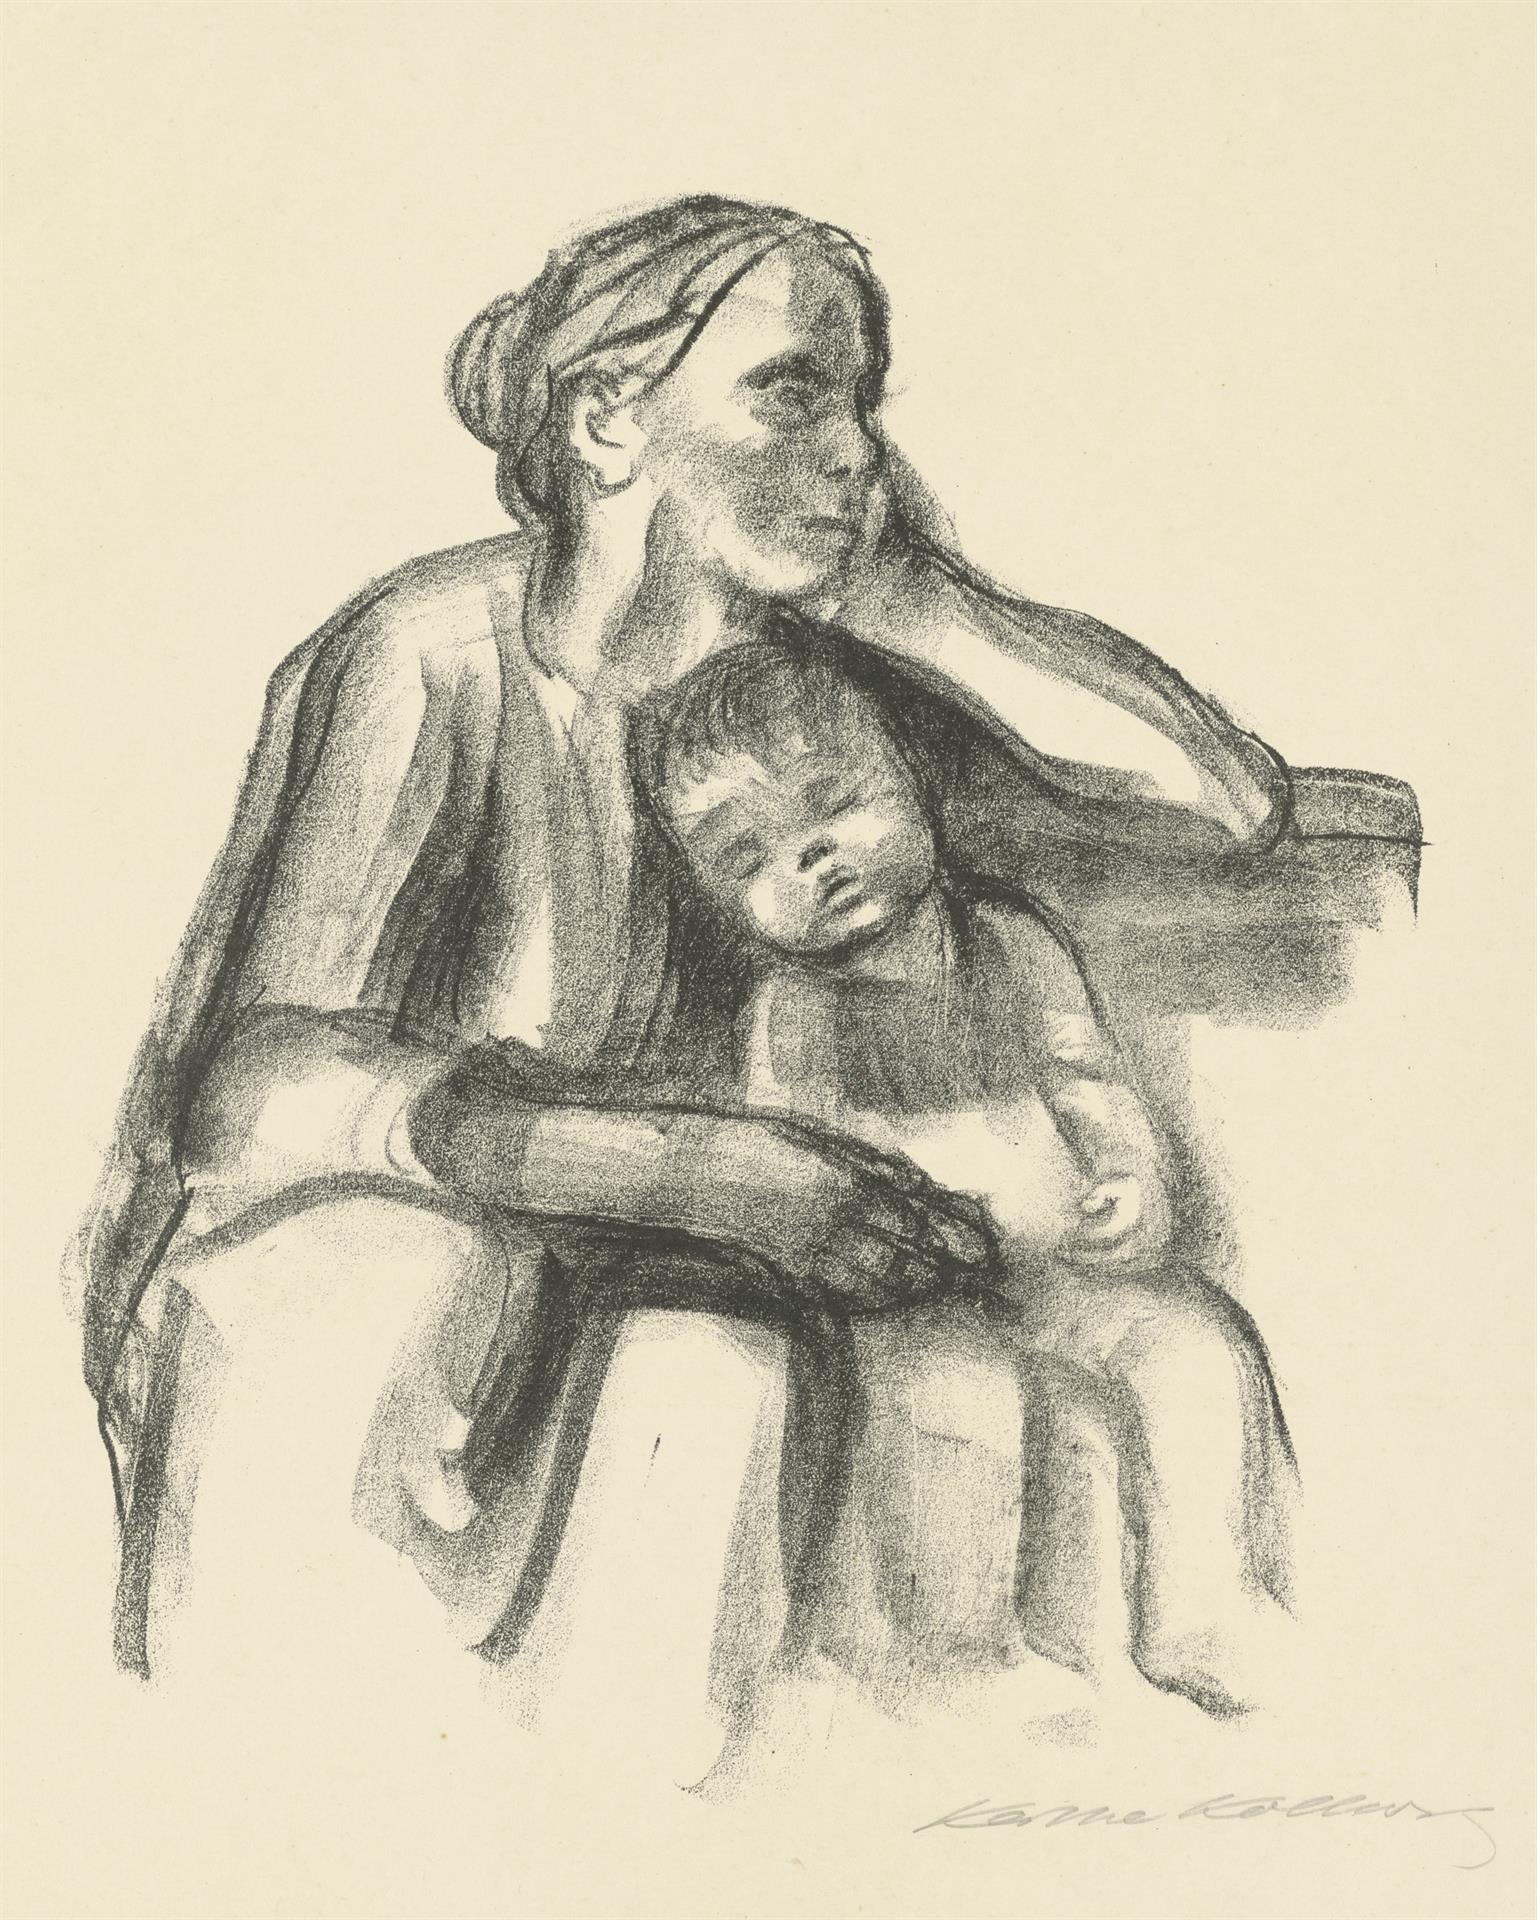 Käthe Kollwitz, Arbeiterfrau mit schlafendem Jungen, 1927, Kreidelithographie (Umdruck), Kn 234 I c